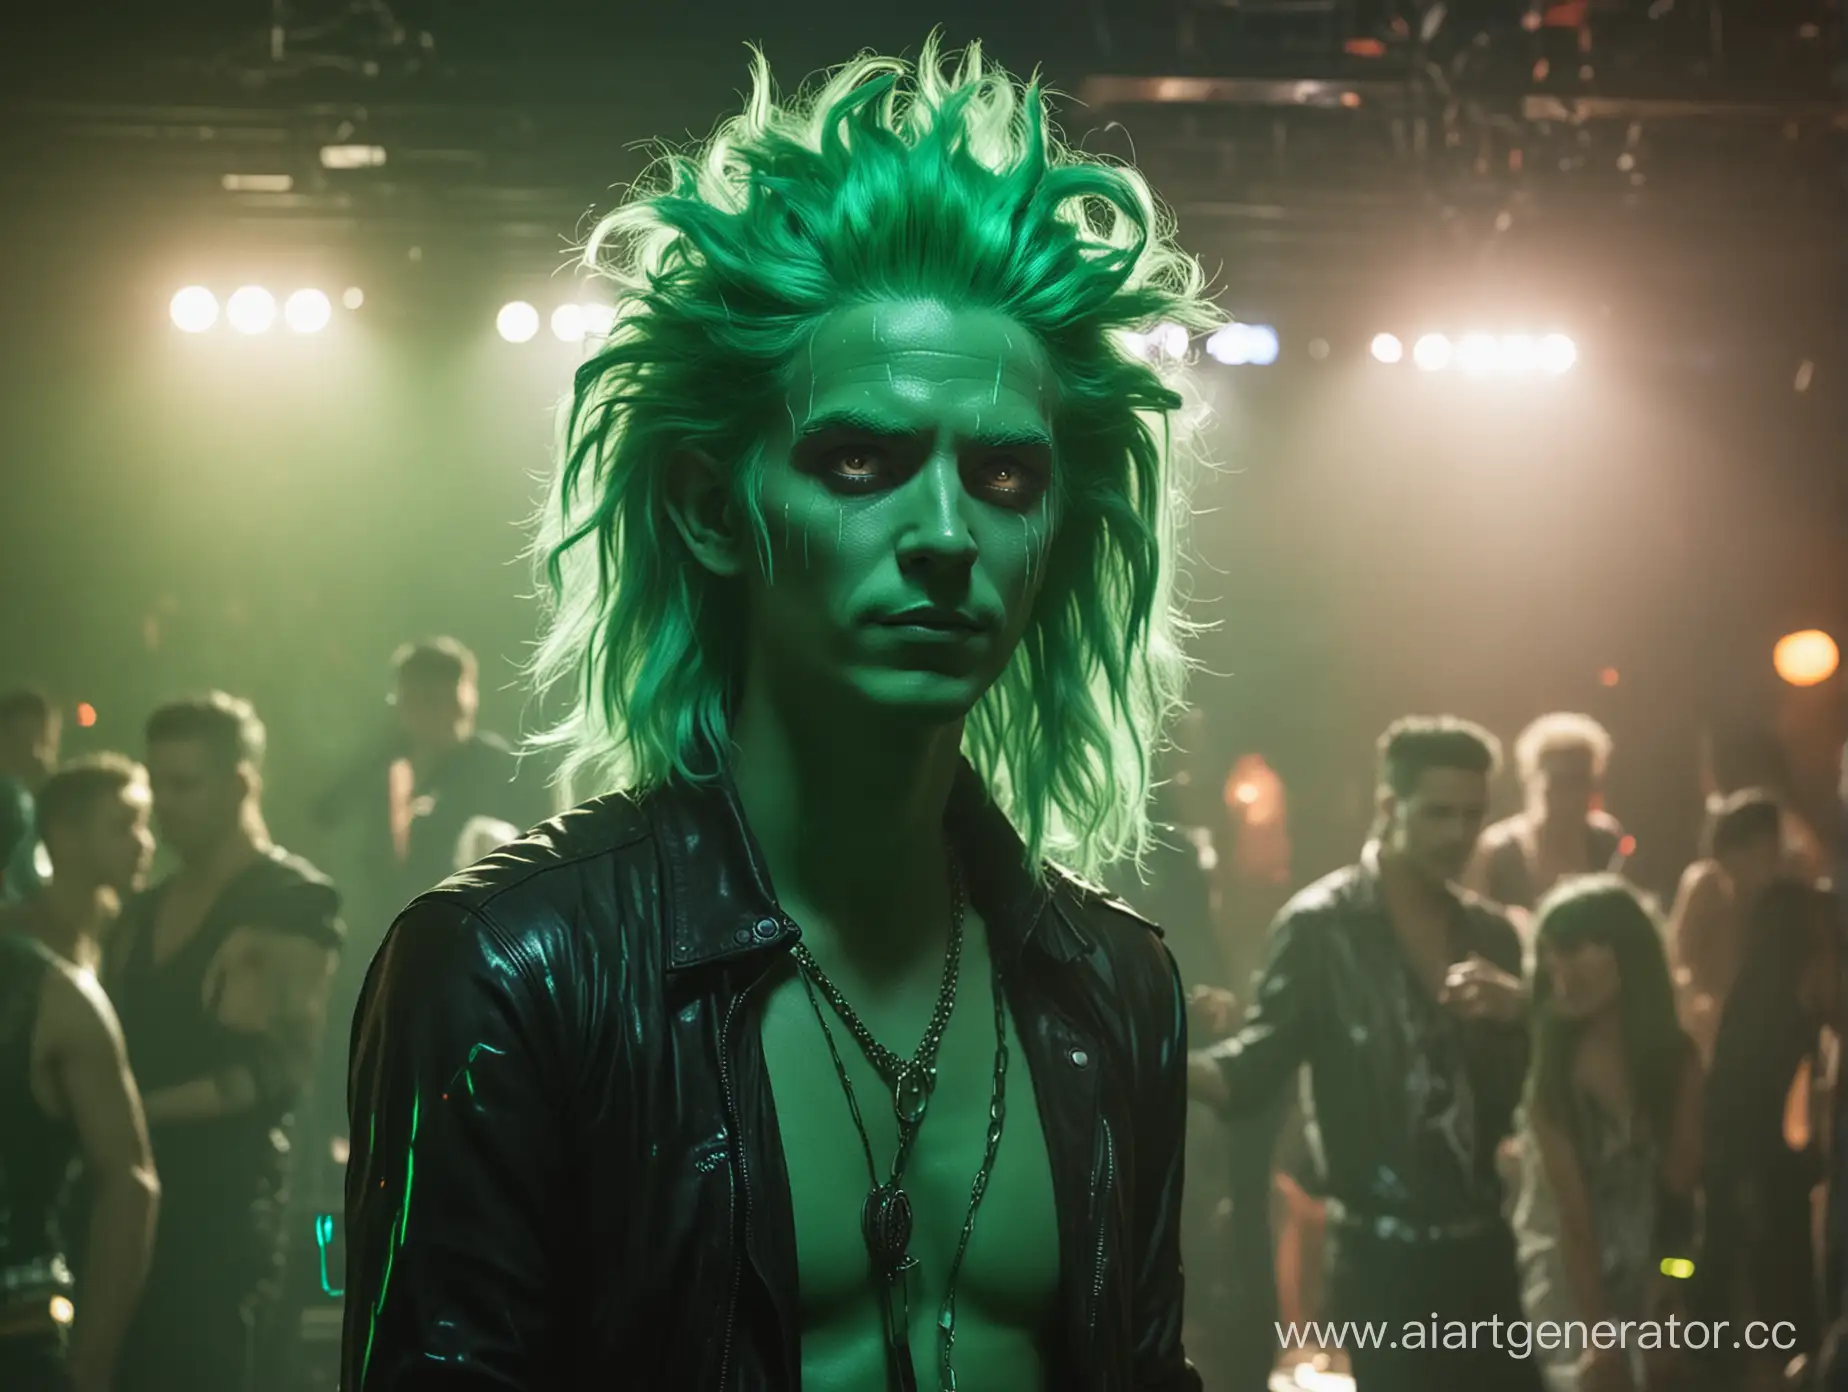 бог подземного мира со светящимися зелеными волосами в полный рост на дискотеке в подземном царстве